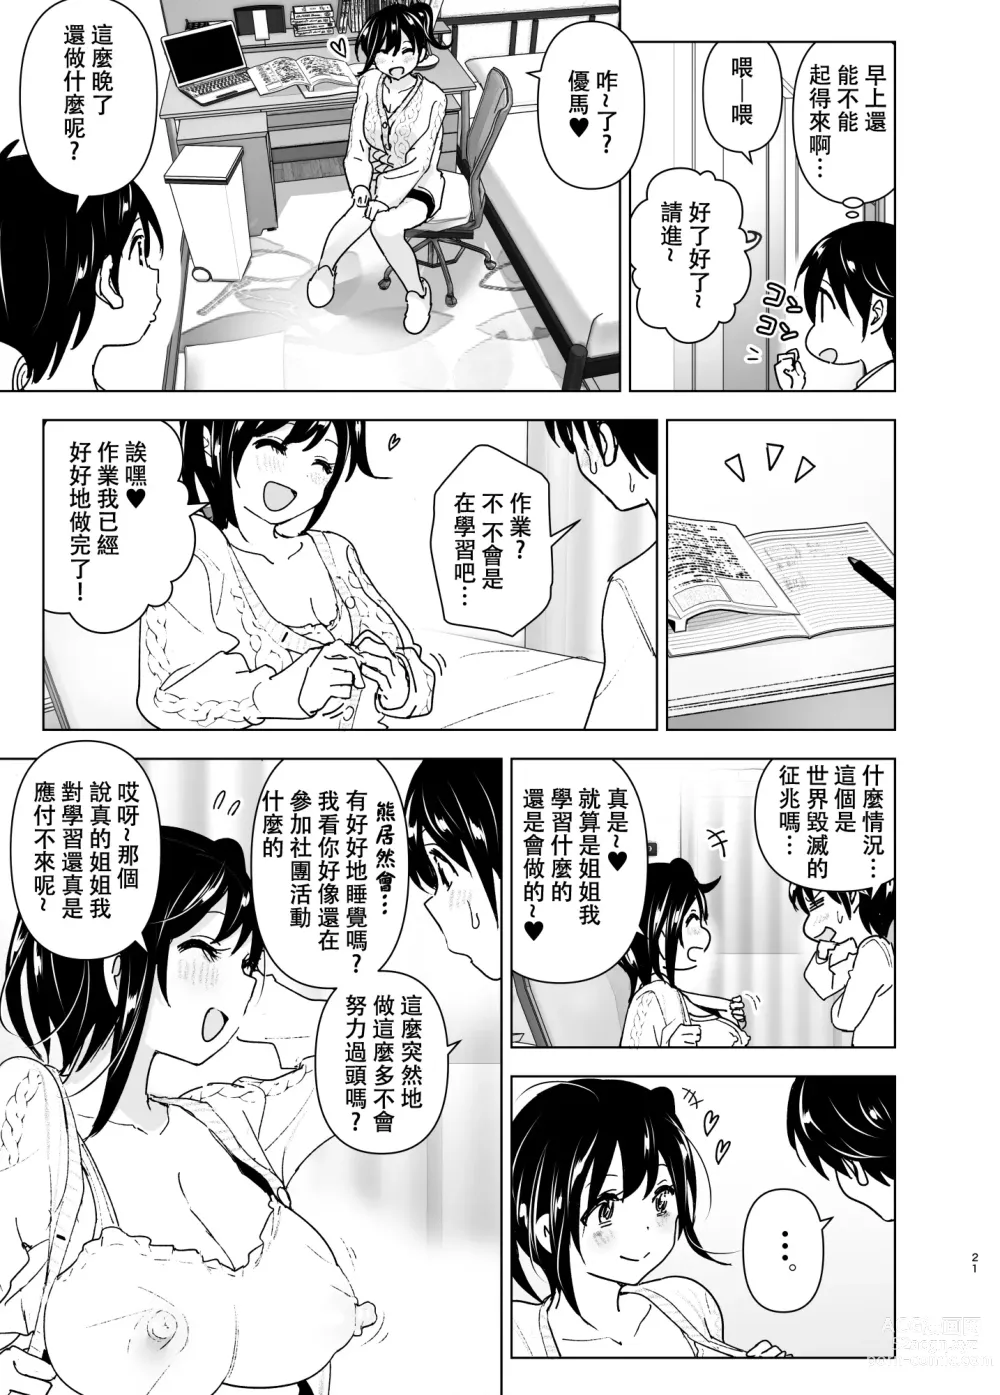 Page 20 of doujinshi 姐姐與傾聽抱怨的弟弟的故事 (decensored)